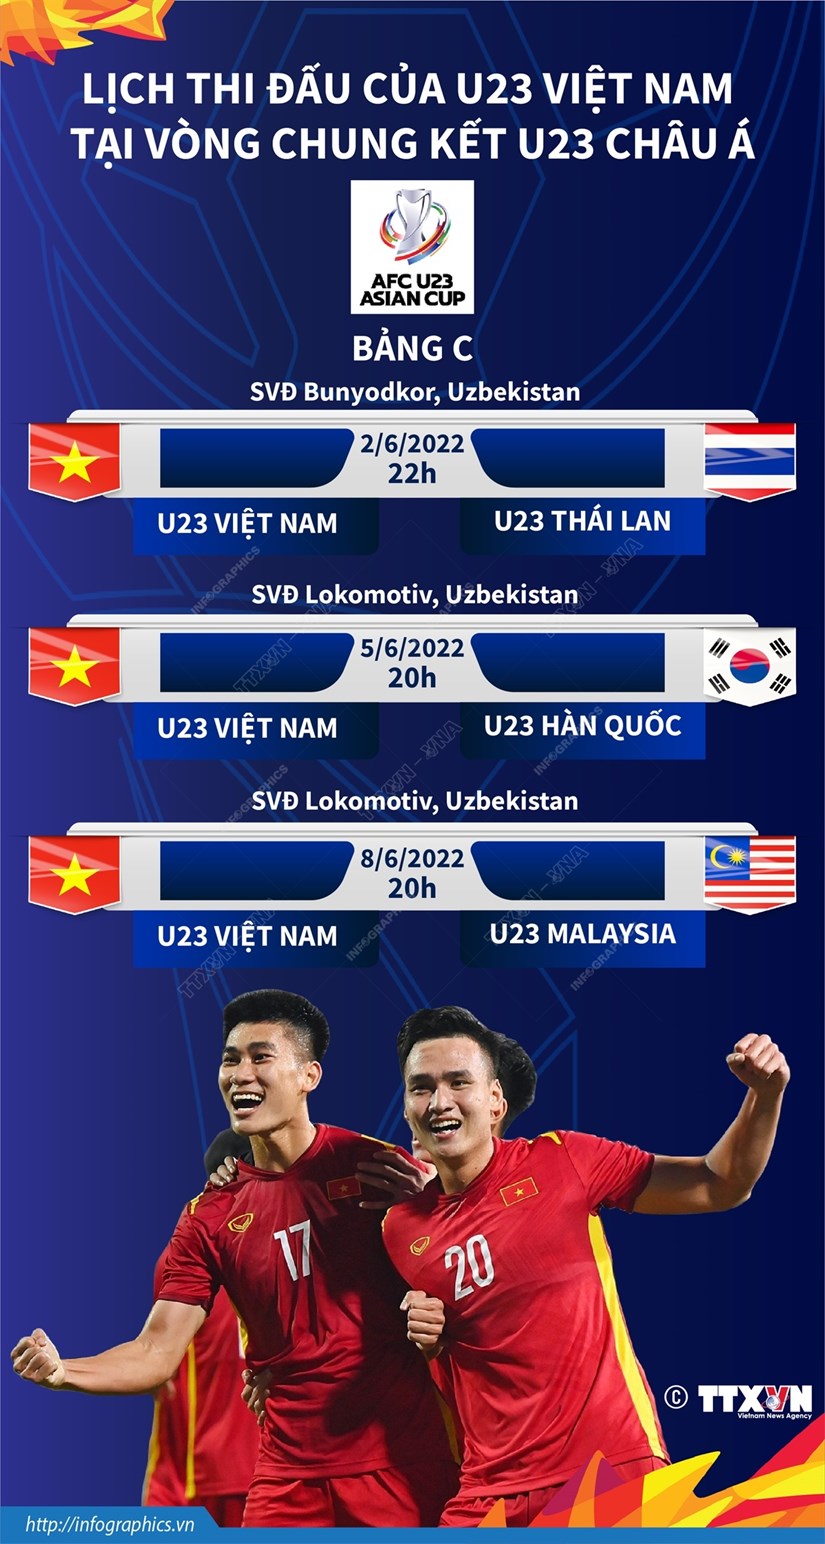 U23 Việt Nam: Hành trình của U23 Việt Nam tại vòng chung kết U23 châu Á đã để lại dấu ấn đậm nét trong lịch sử bóng đá Việt Nam. Hãy cùng trải nghiệm lại những kỉ niệm đáng nhớ qua những bức ảnh và những trận đấu kinh điển của đội tuyển U23 Việt Nam. Bạn sẽ cảm nhận được niềm đam mê và tình yêu dành cho bóng đá Việt Nam.